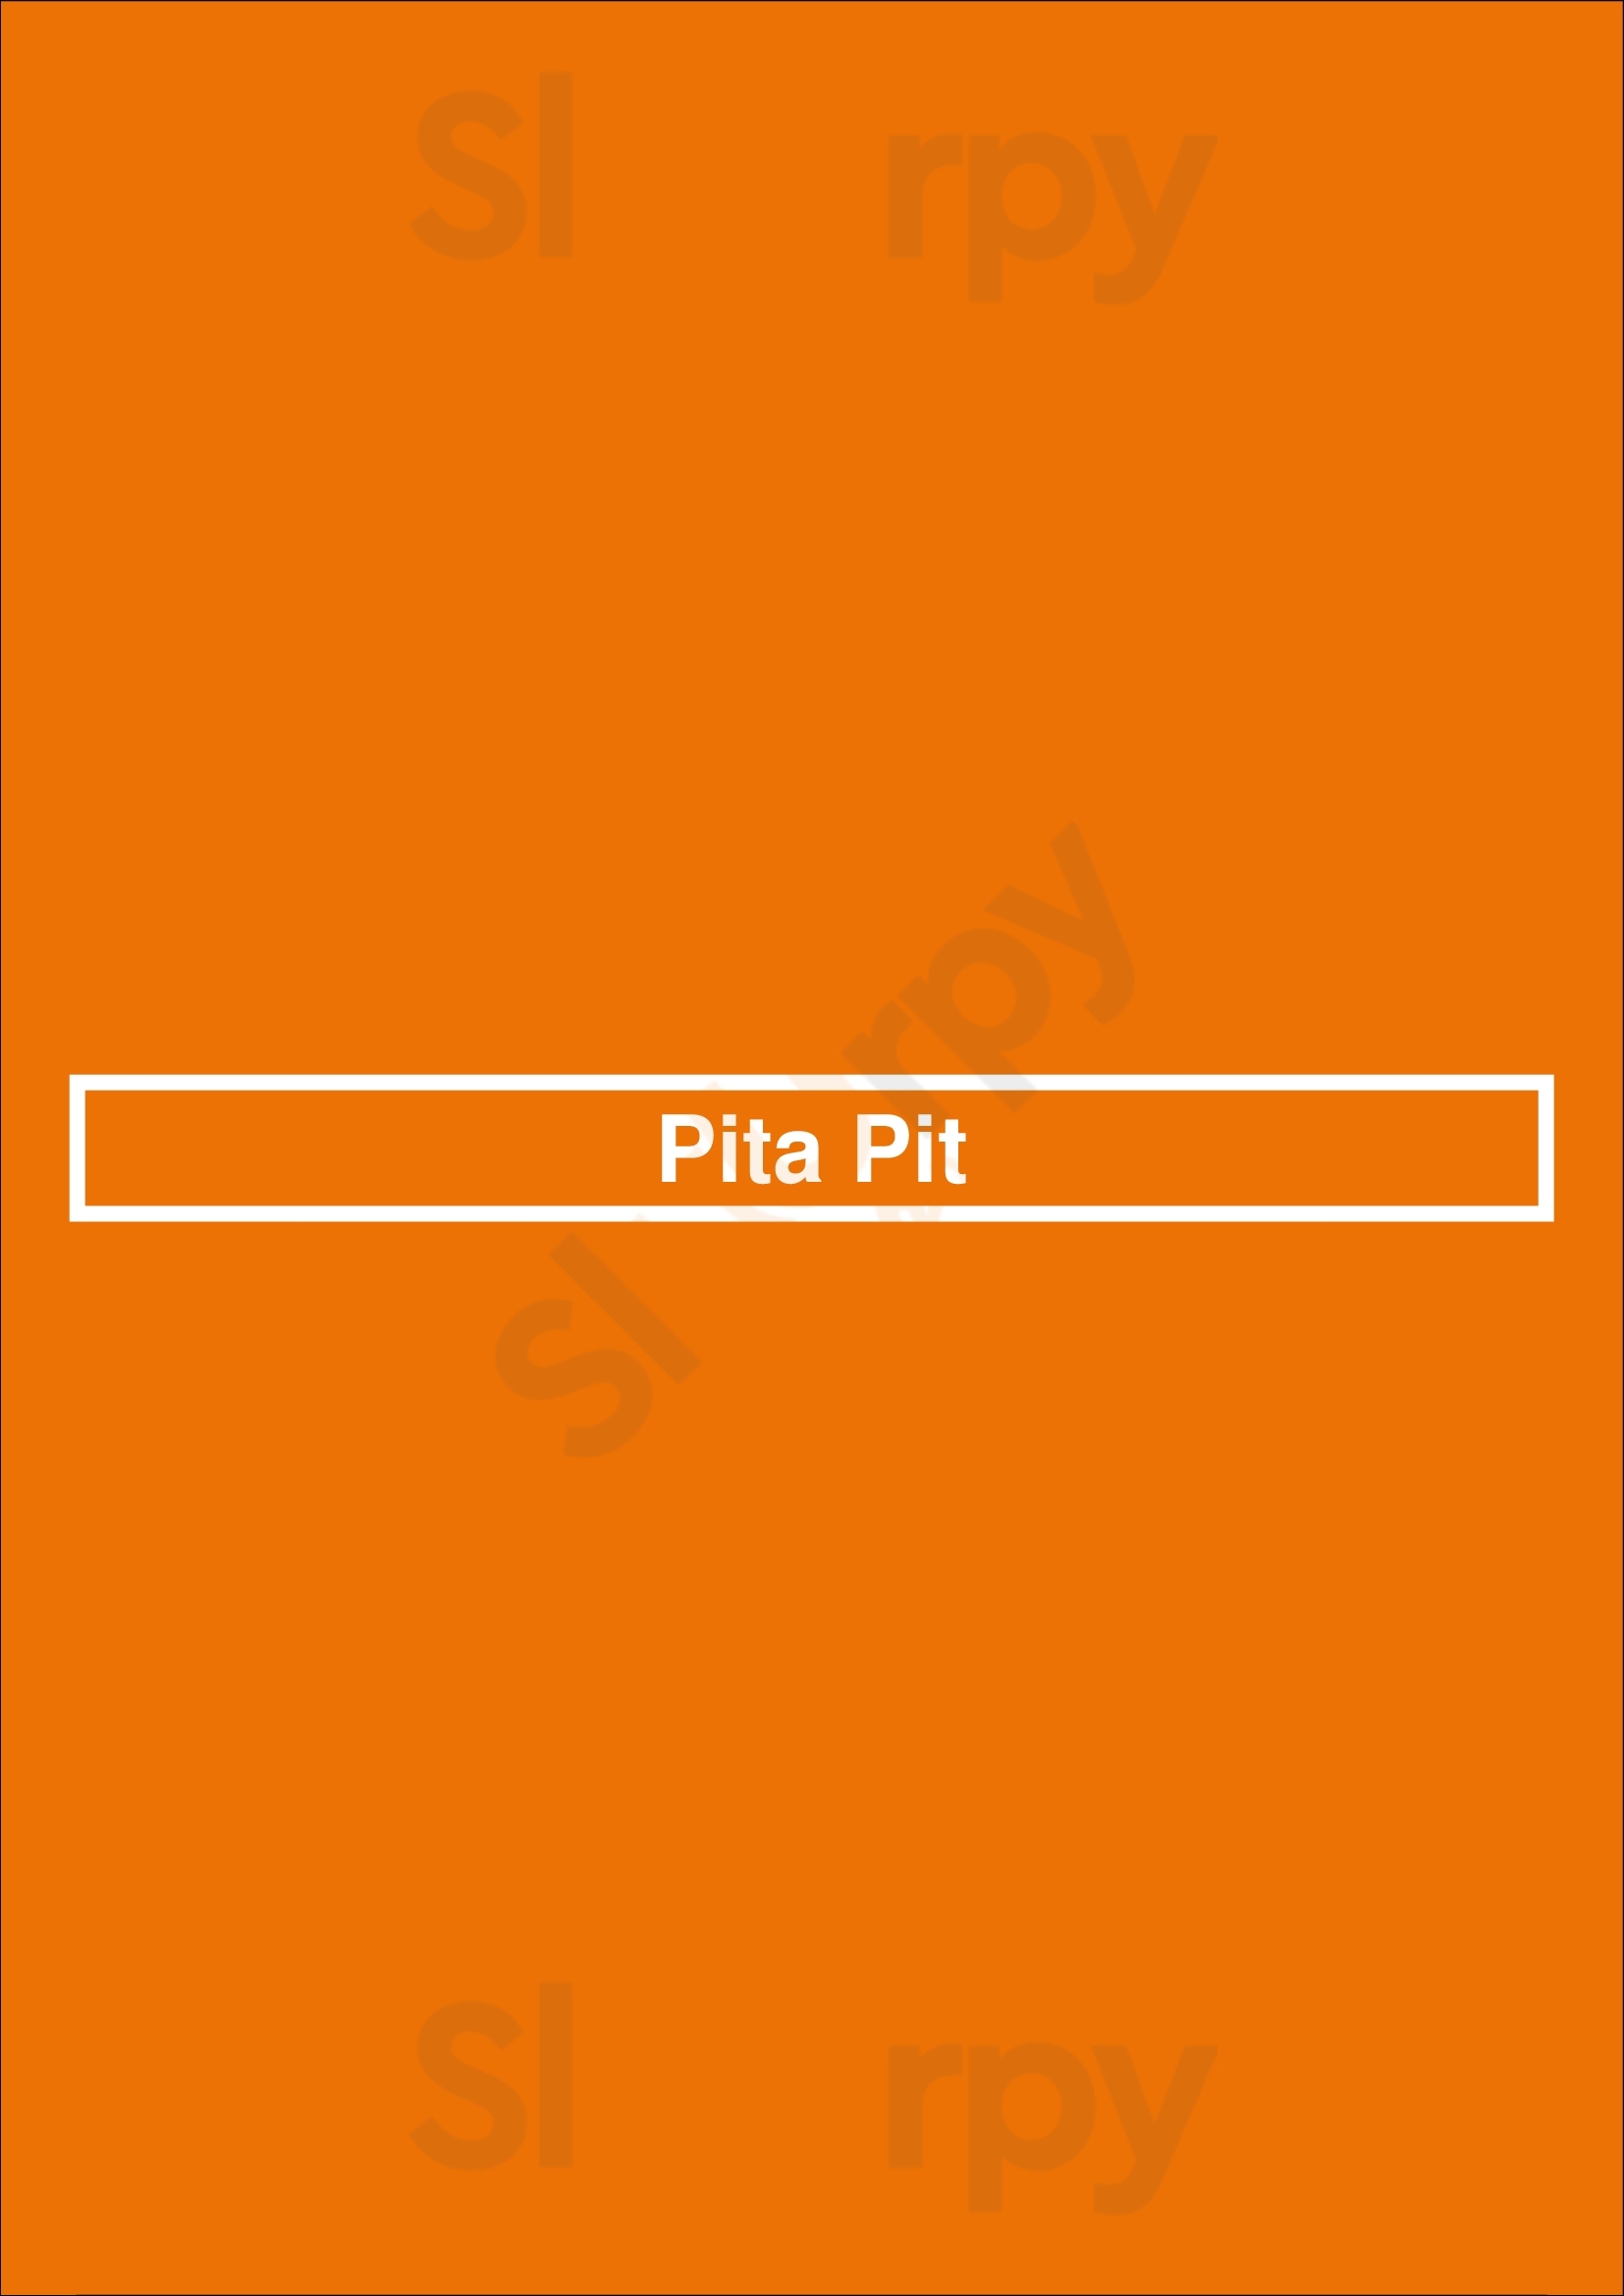 Pita Pit London Menu - 1